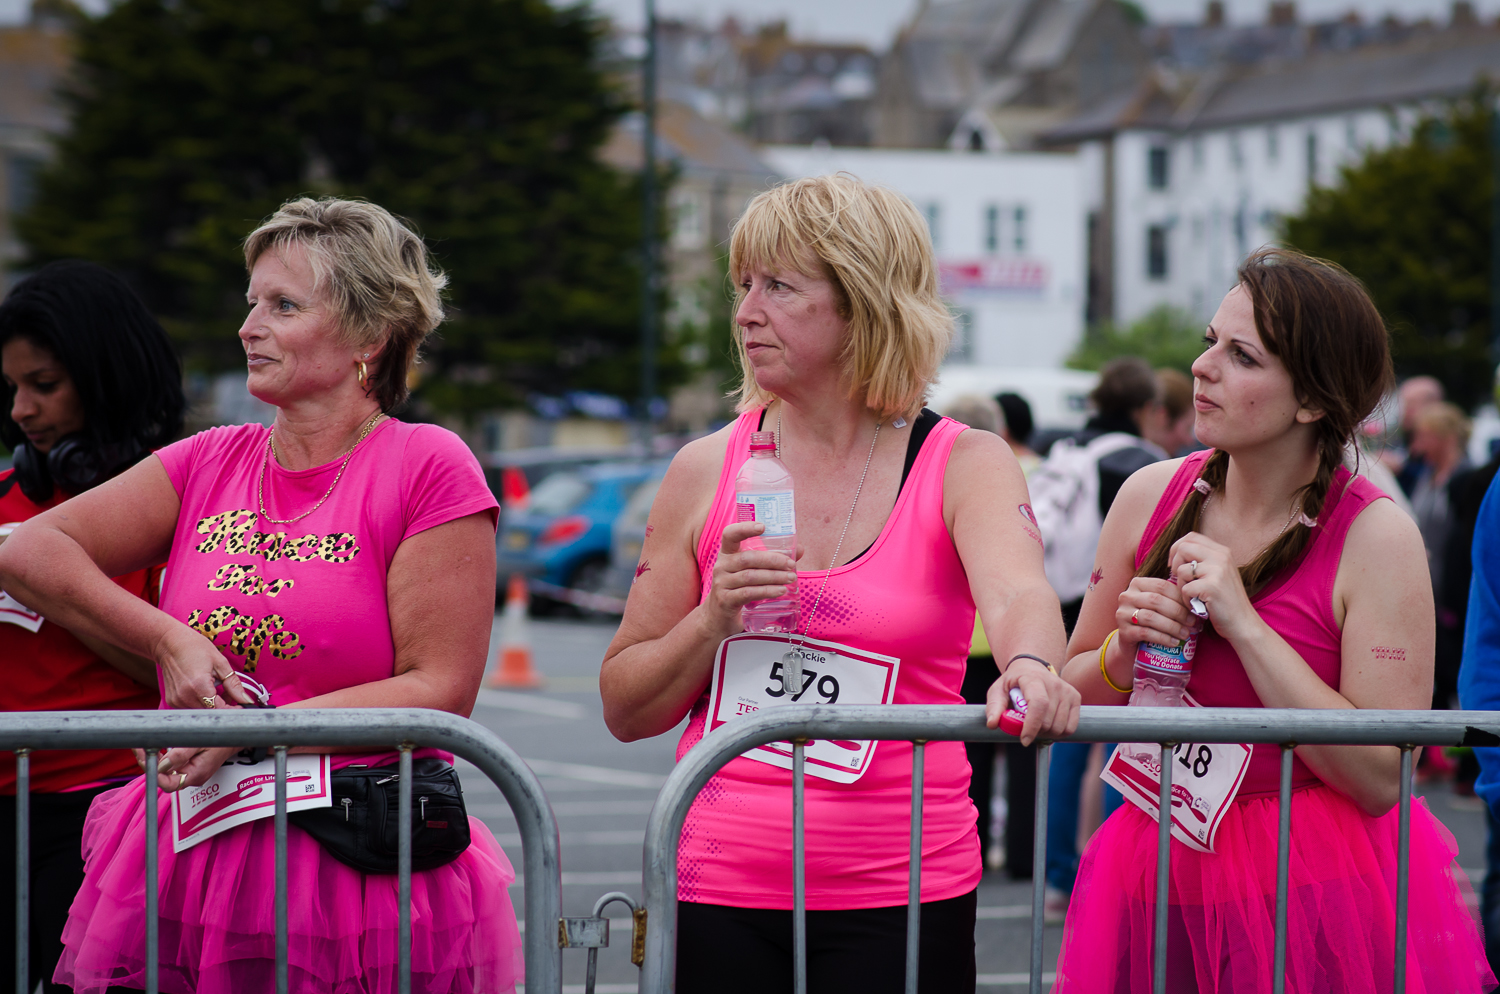 Race for life blog 2015-188.jpg